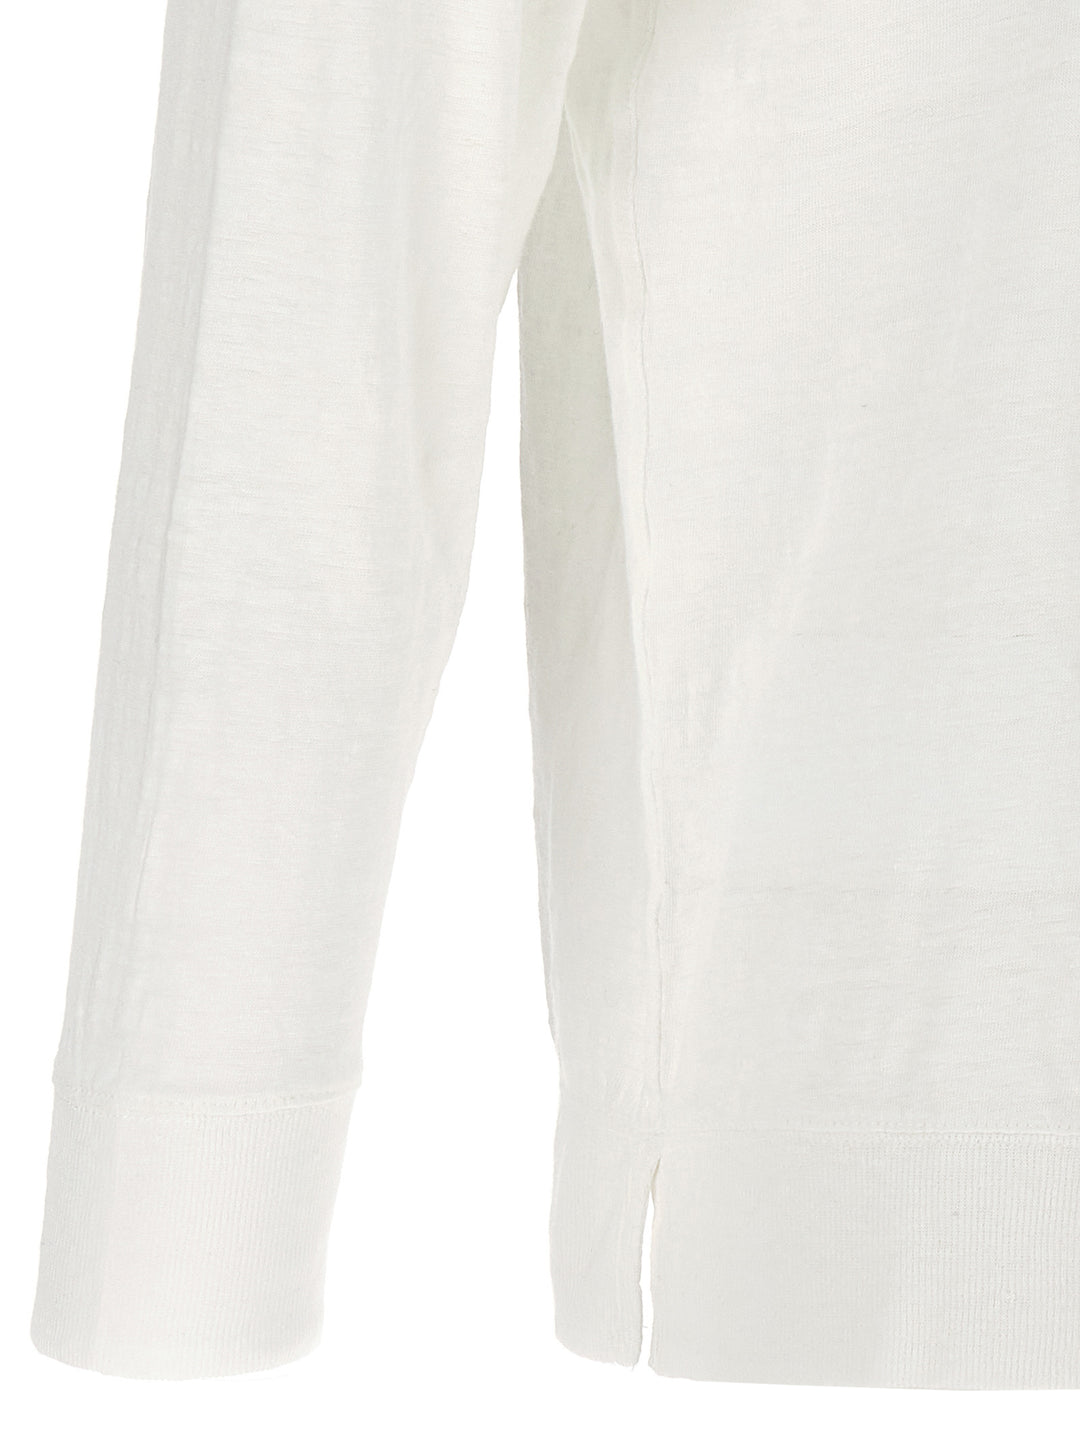 Kieffer T Shirt Bianco/Nero